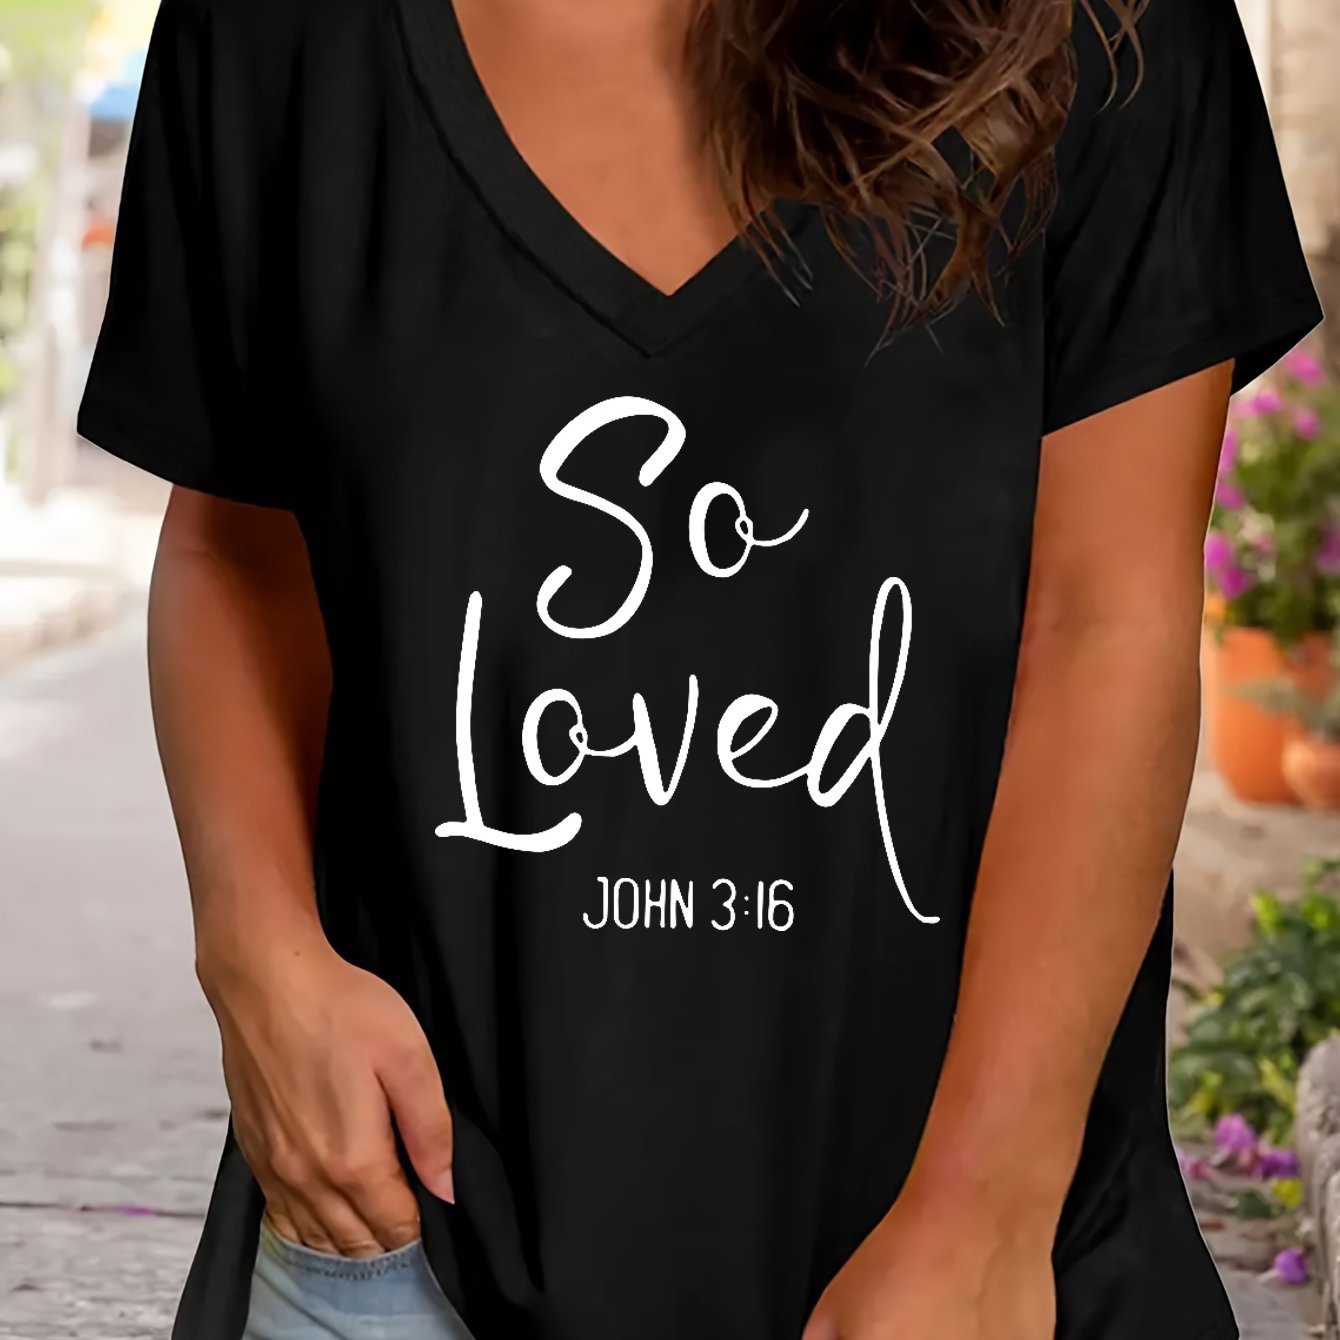 So Loved Plus Size Women's Christian V Neck T-Shirt claimedbygoddesigns